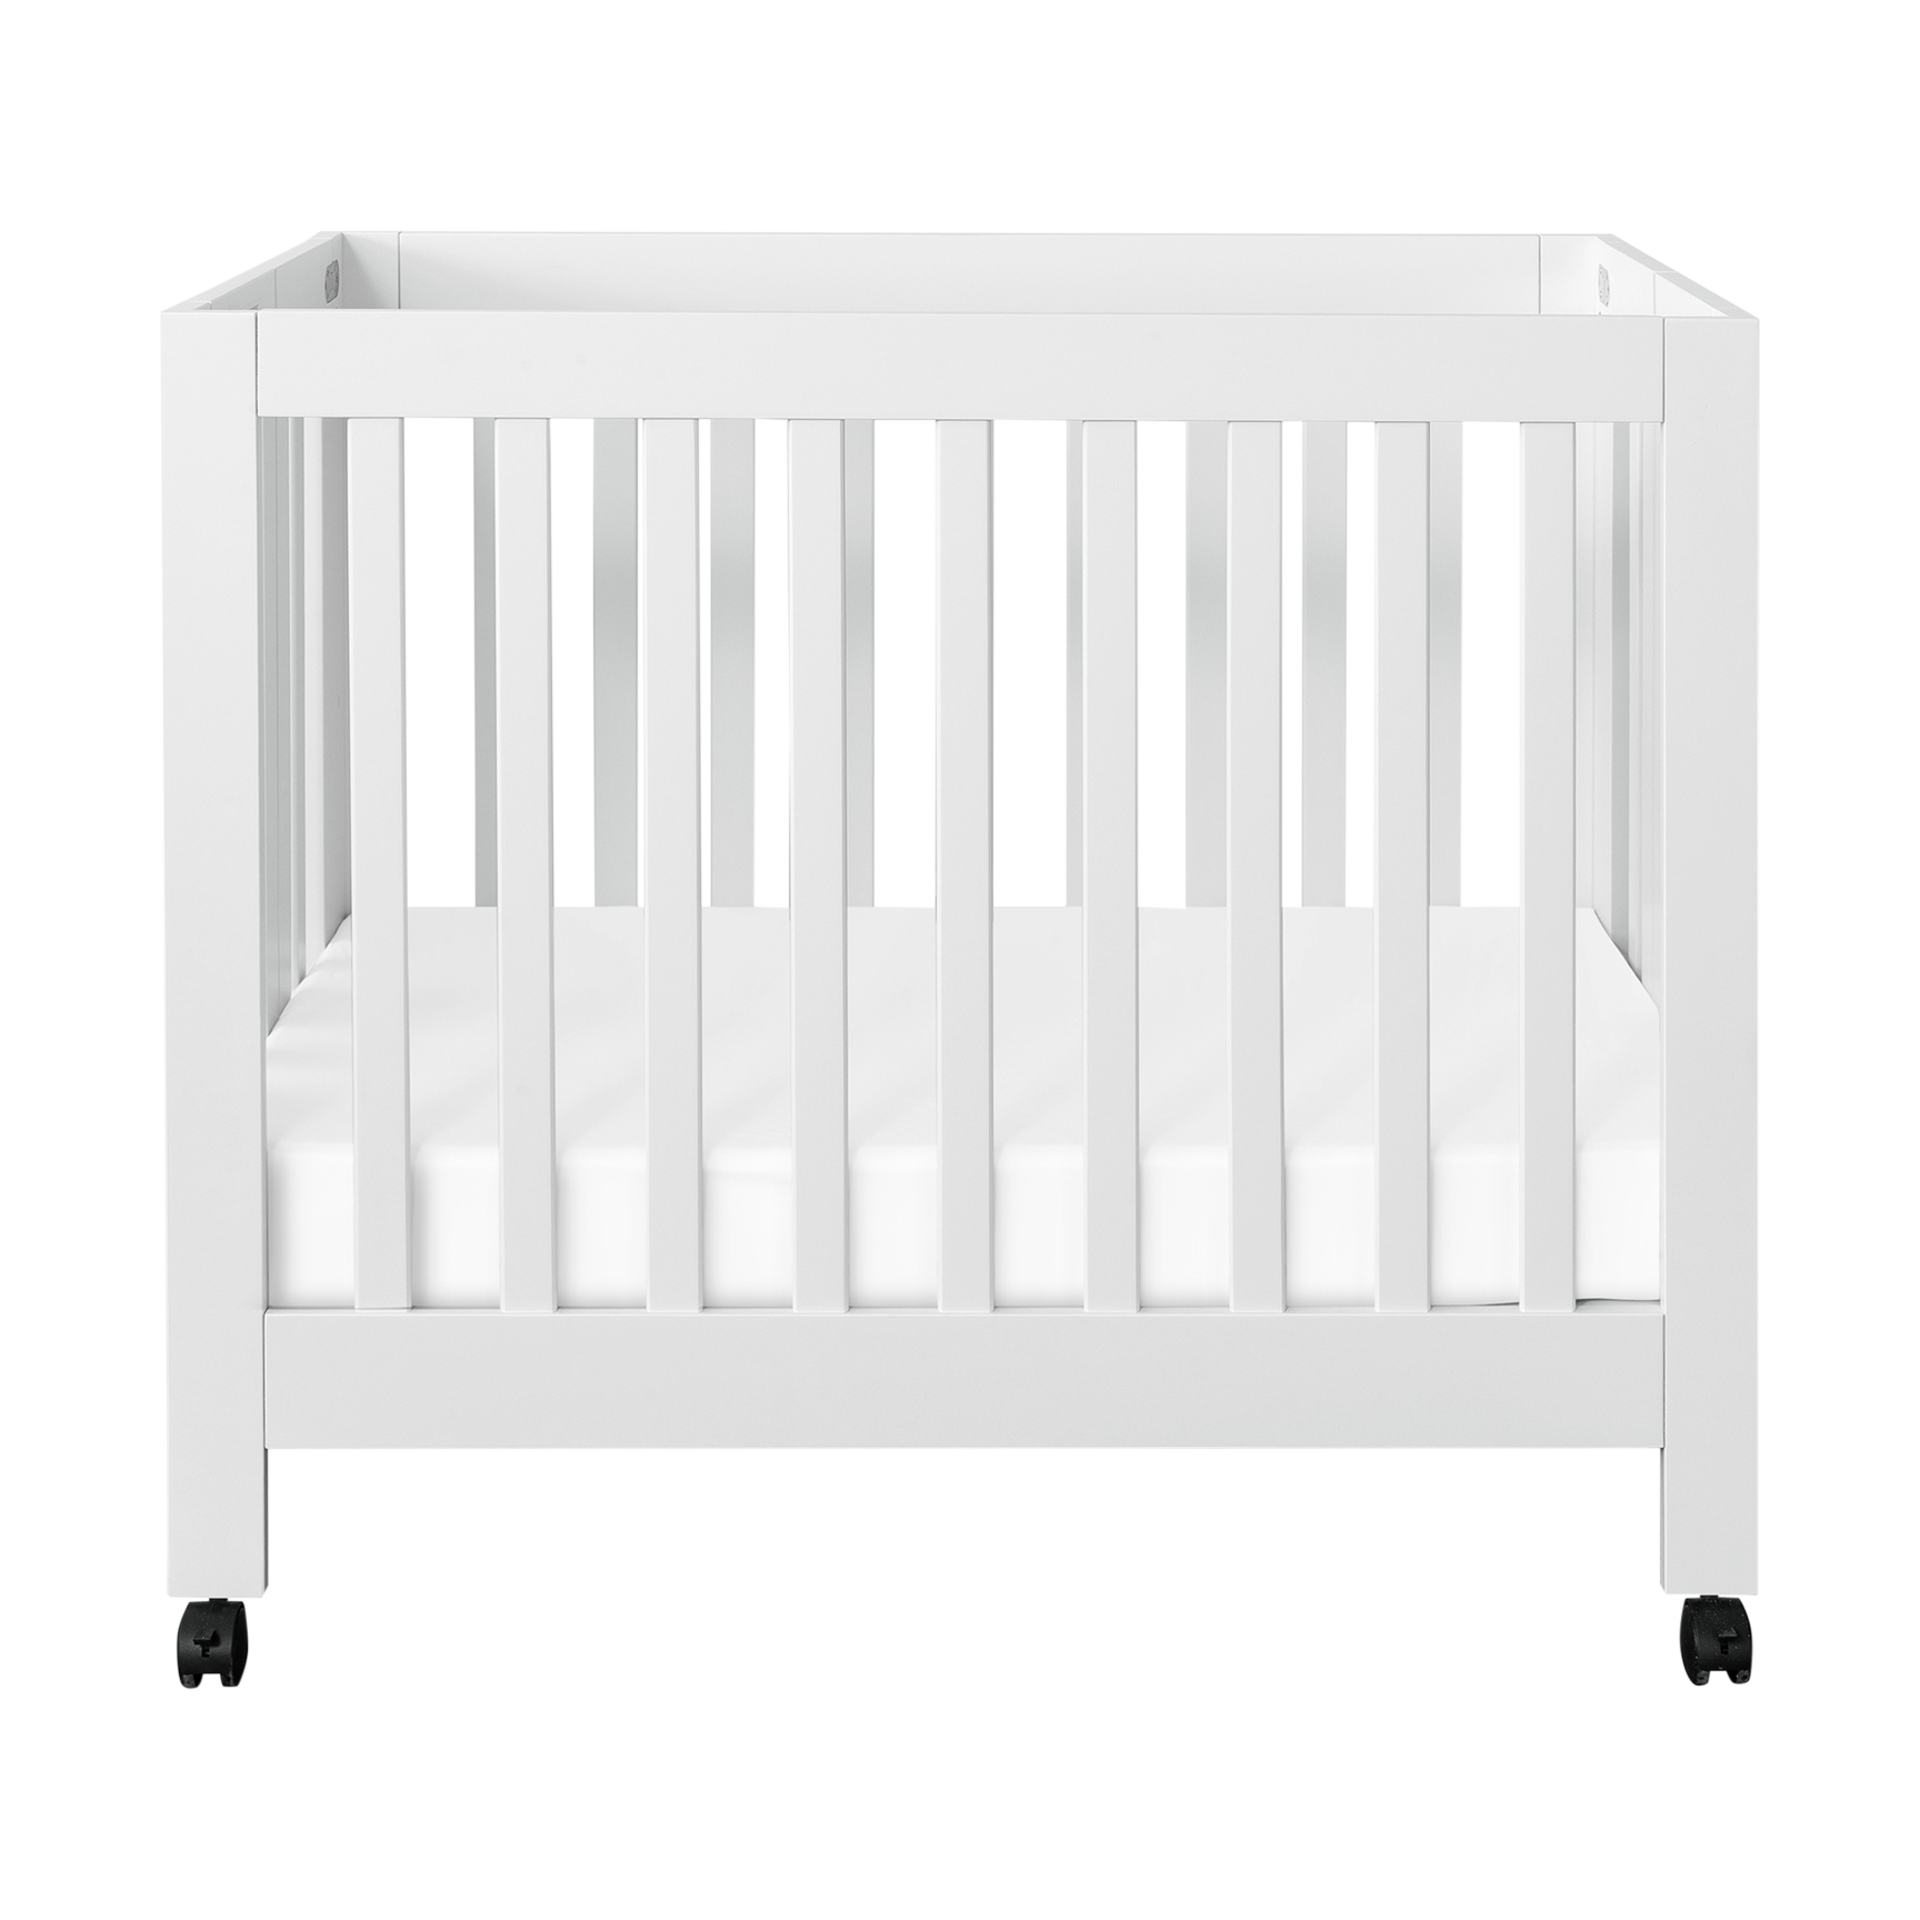 mini crib in store